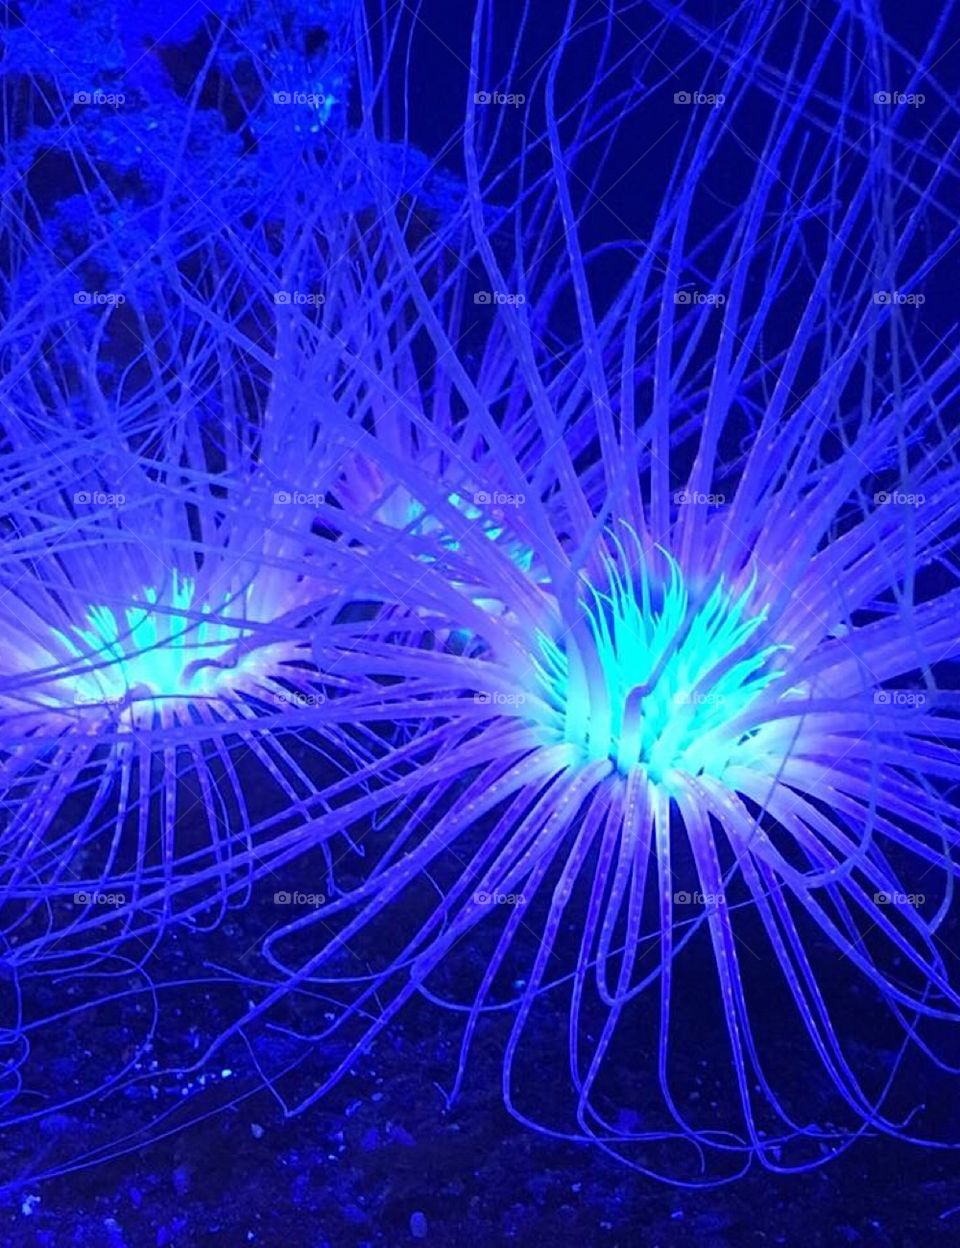 Glowing invertebrates sea creature at the Aquarium of the Pacific in California.